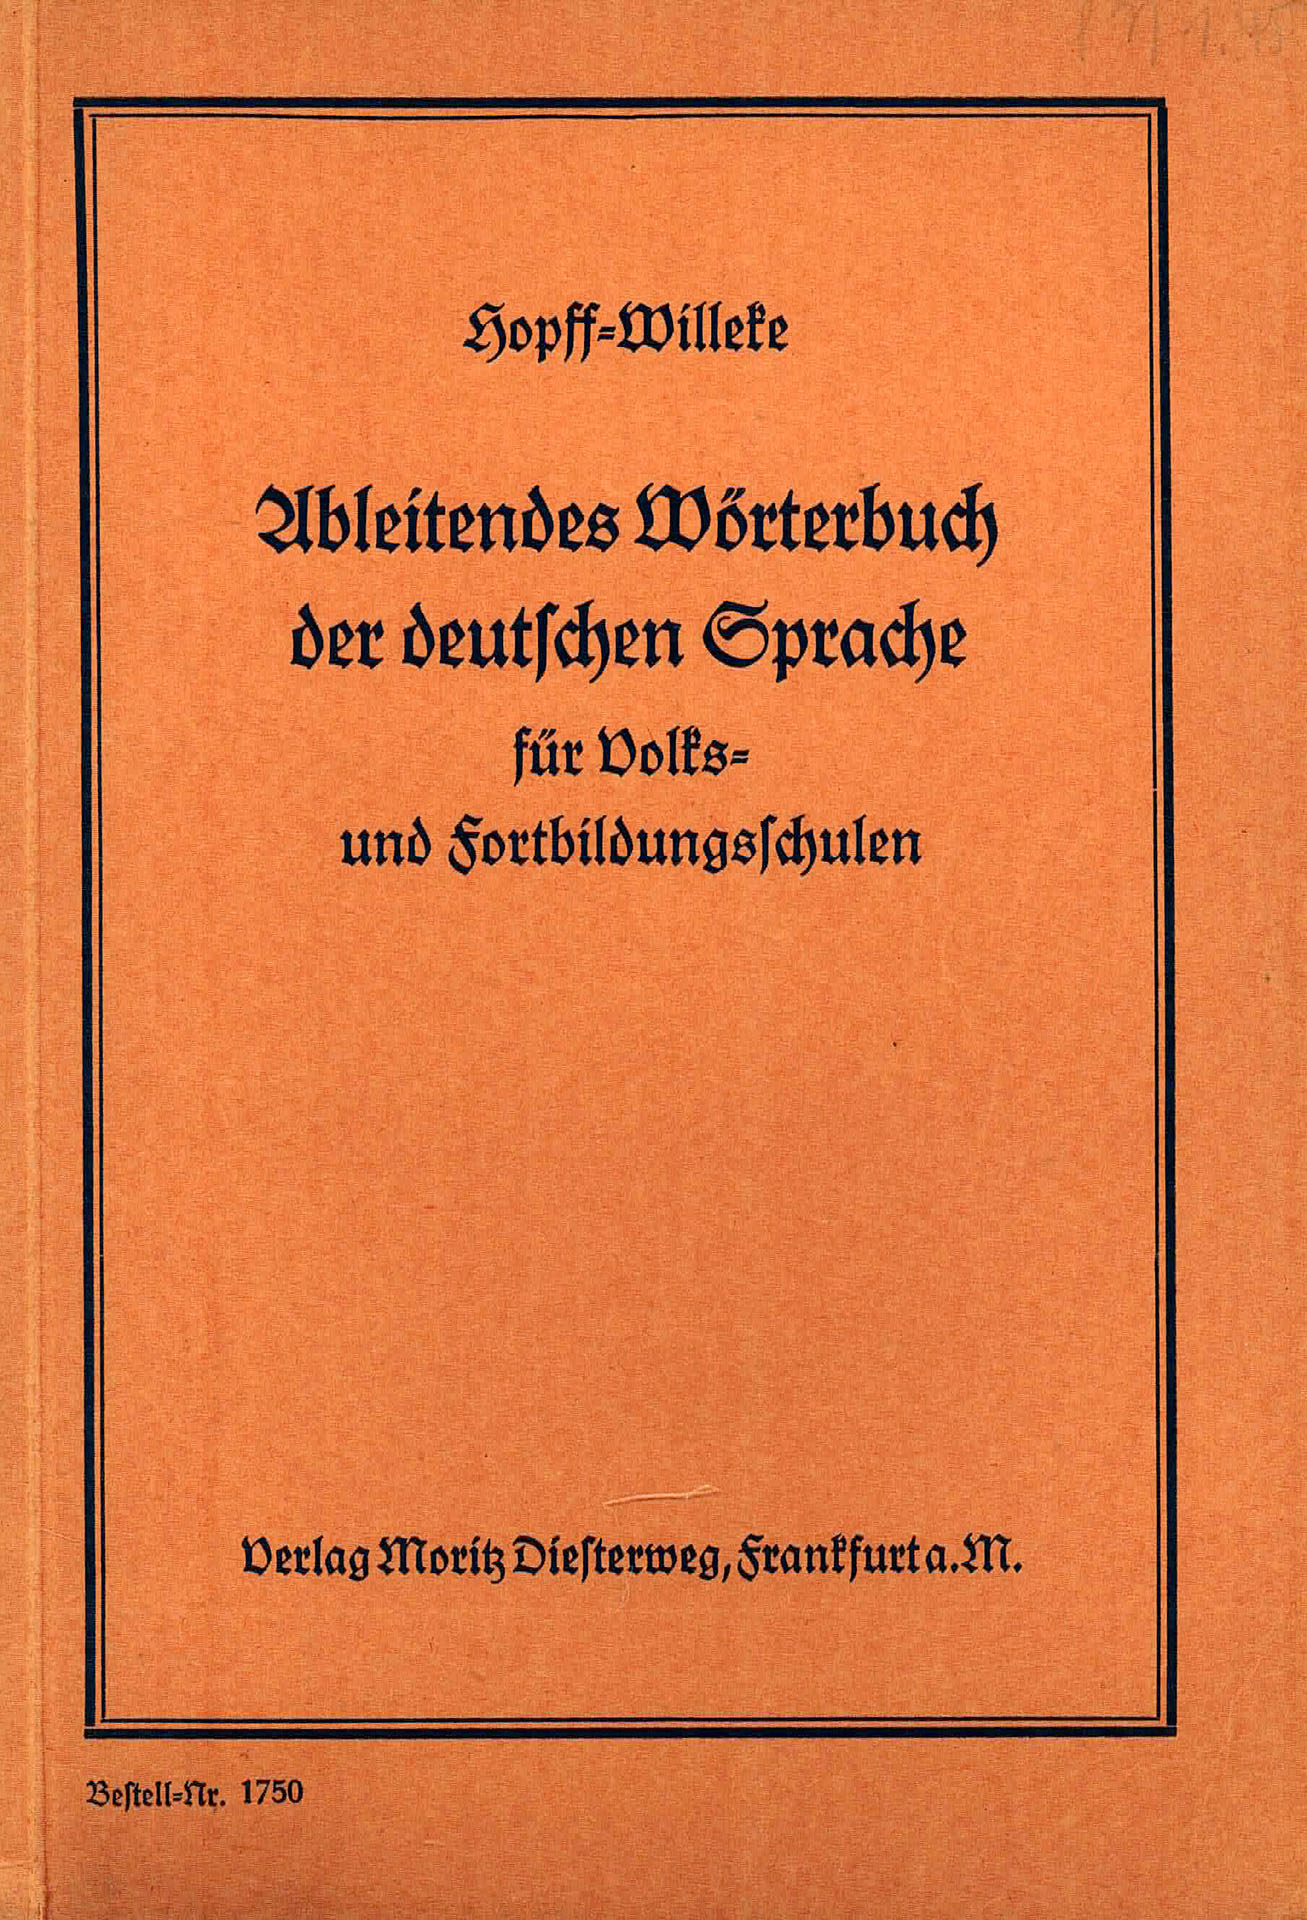 Ableitendes Wörterbuch der deutschen Sprache - Hopff, Willi / Willeke, Karl